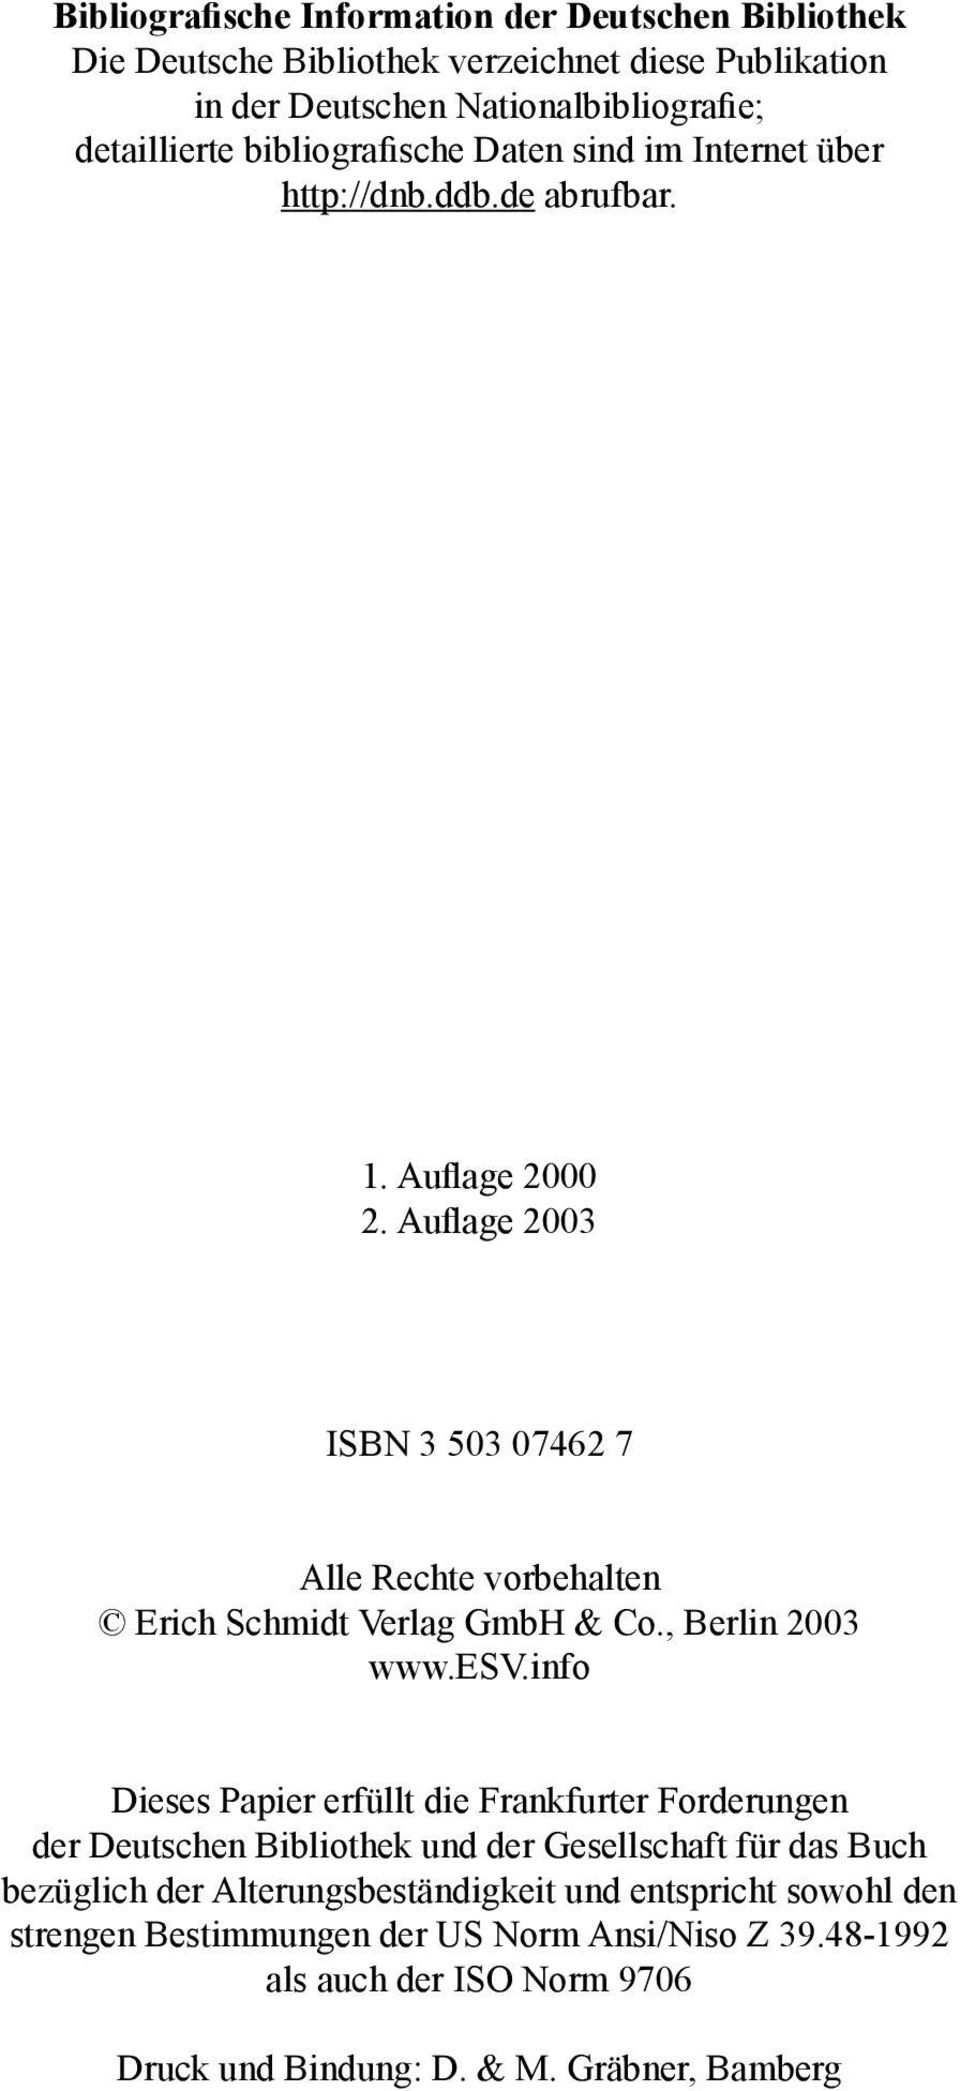 Auflage 2003 ISBN 3 503 07462 7 Alle Rechte vorbehalten Erich Schmidt Verlag GmbH & Co., Berlin 2003 www.esv.